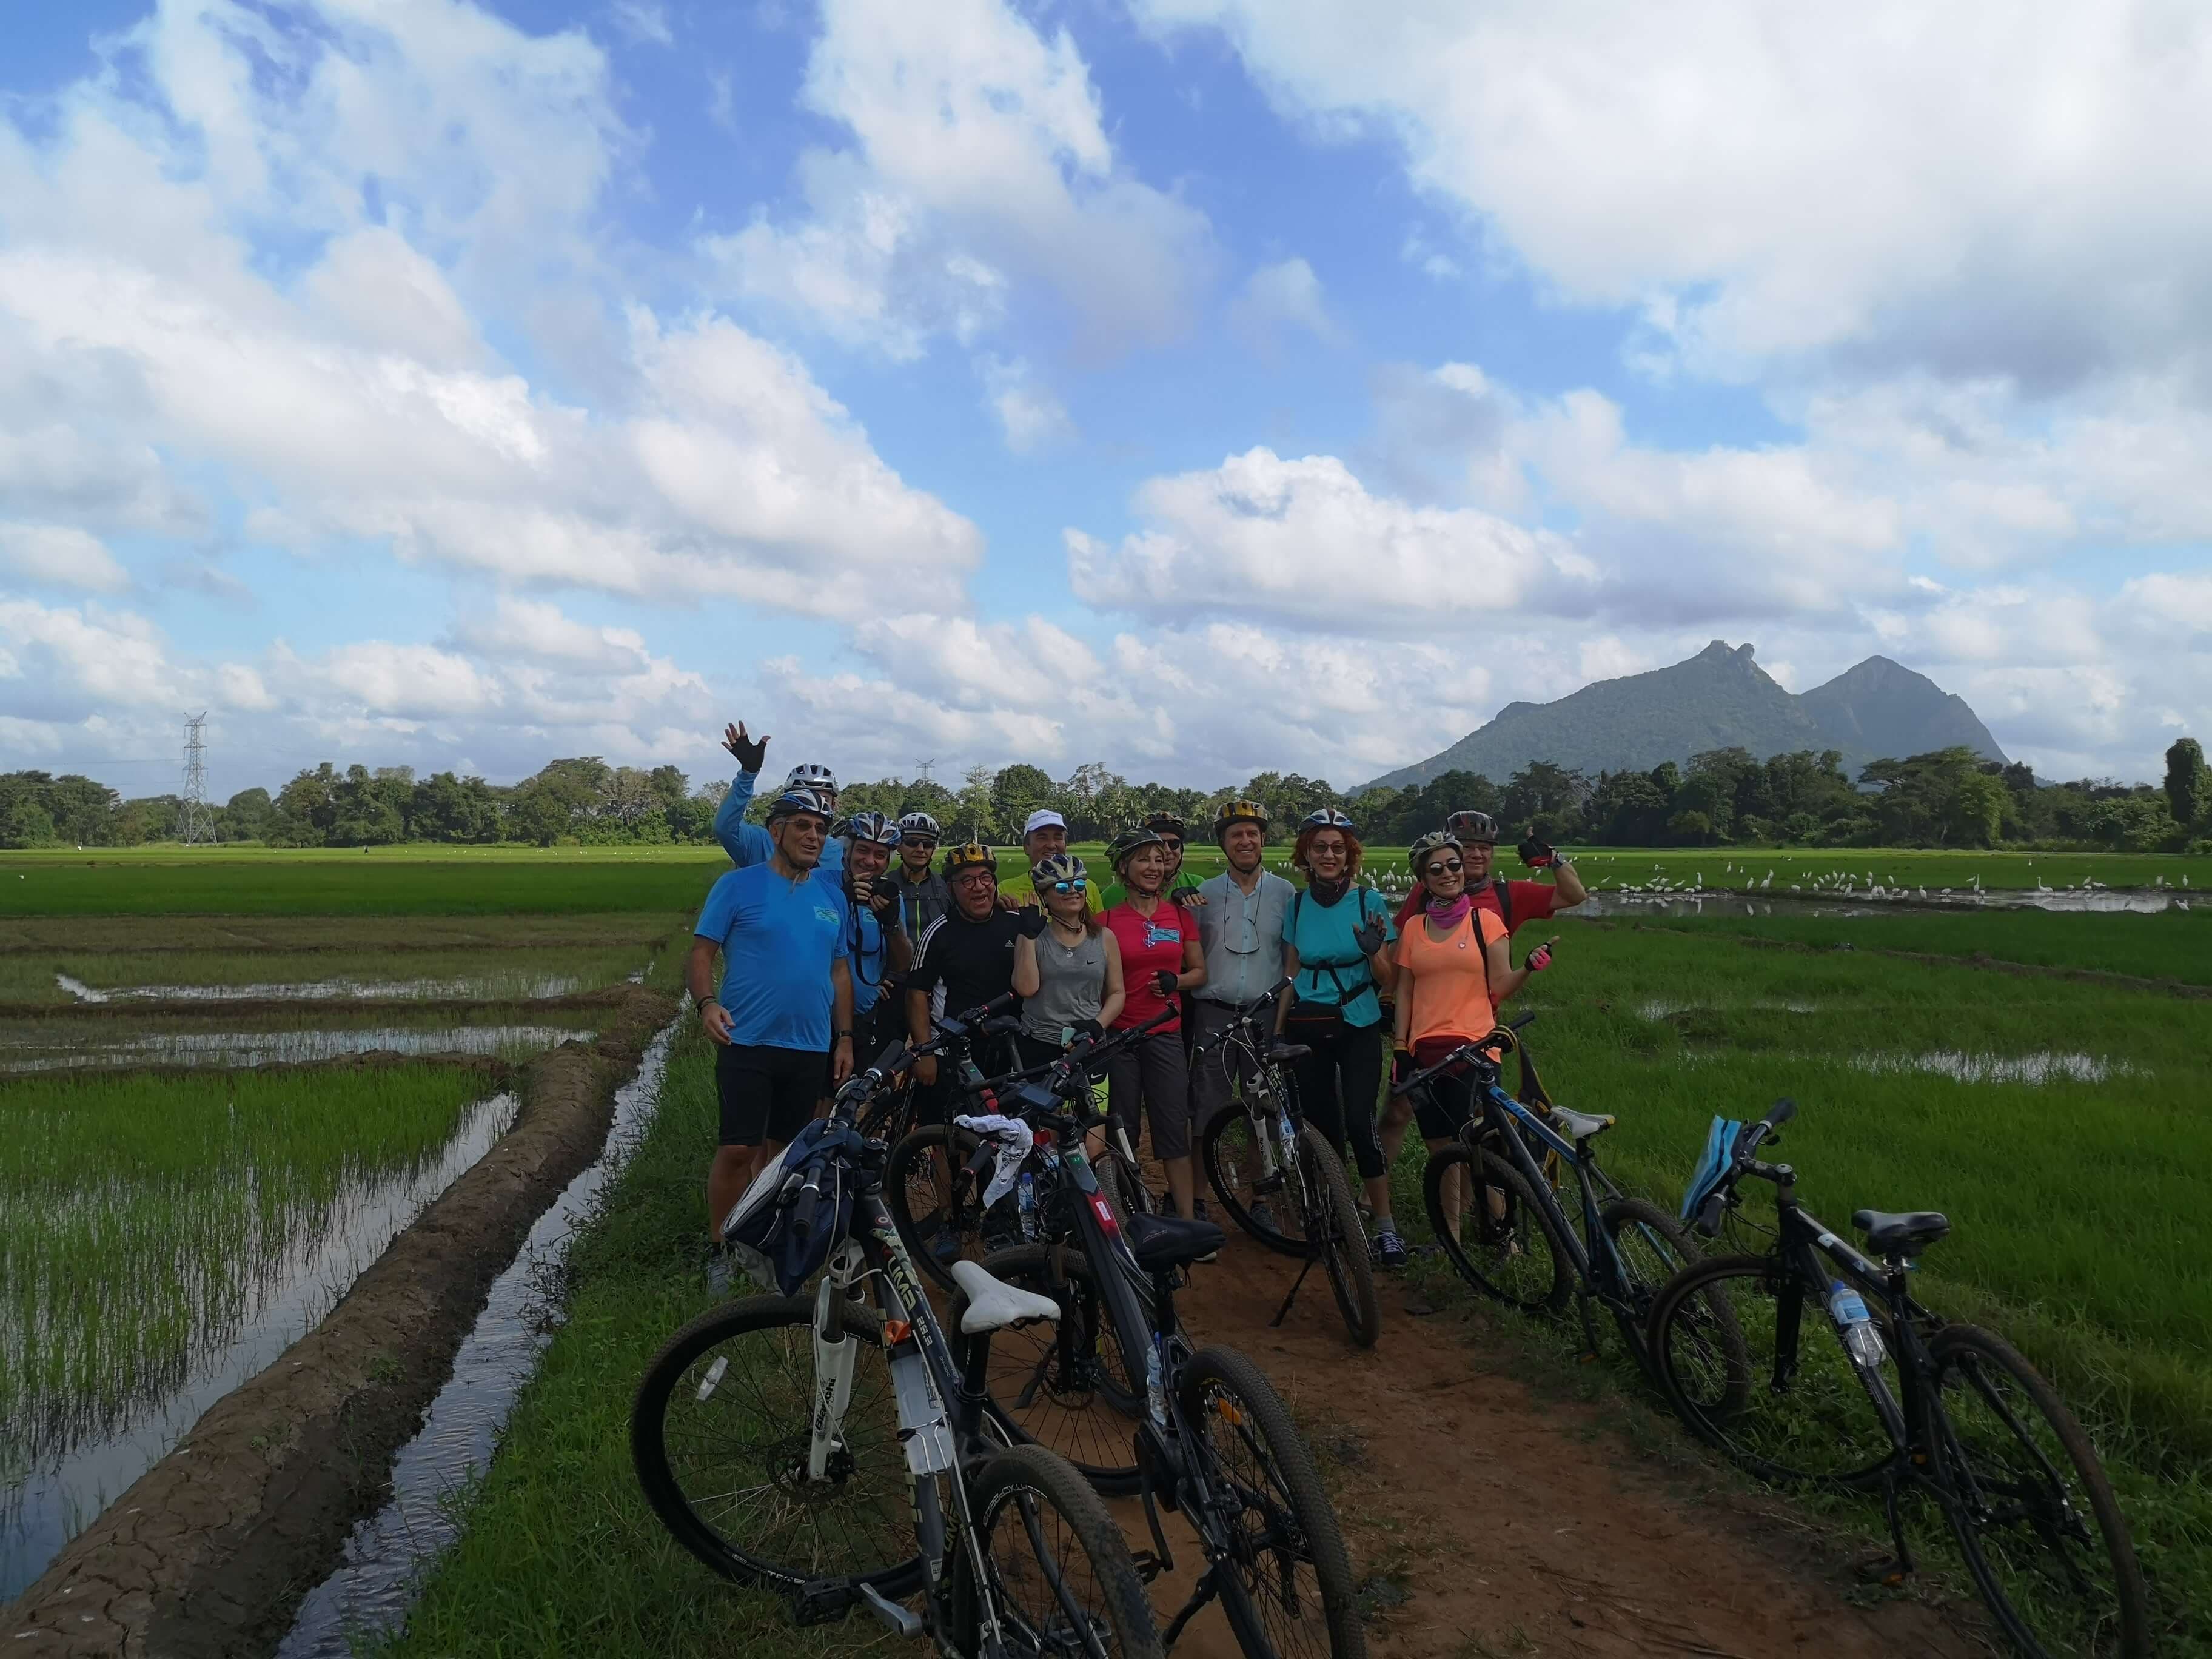 جولة ركوب الدراجات في حقل الأرز الأخضر الجميل في سيجيريا إلى أنورادابورا في سريلانكا